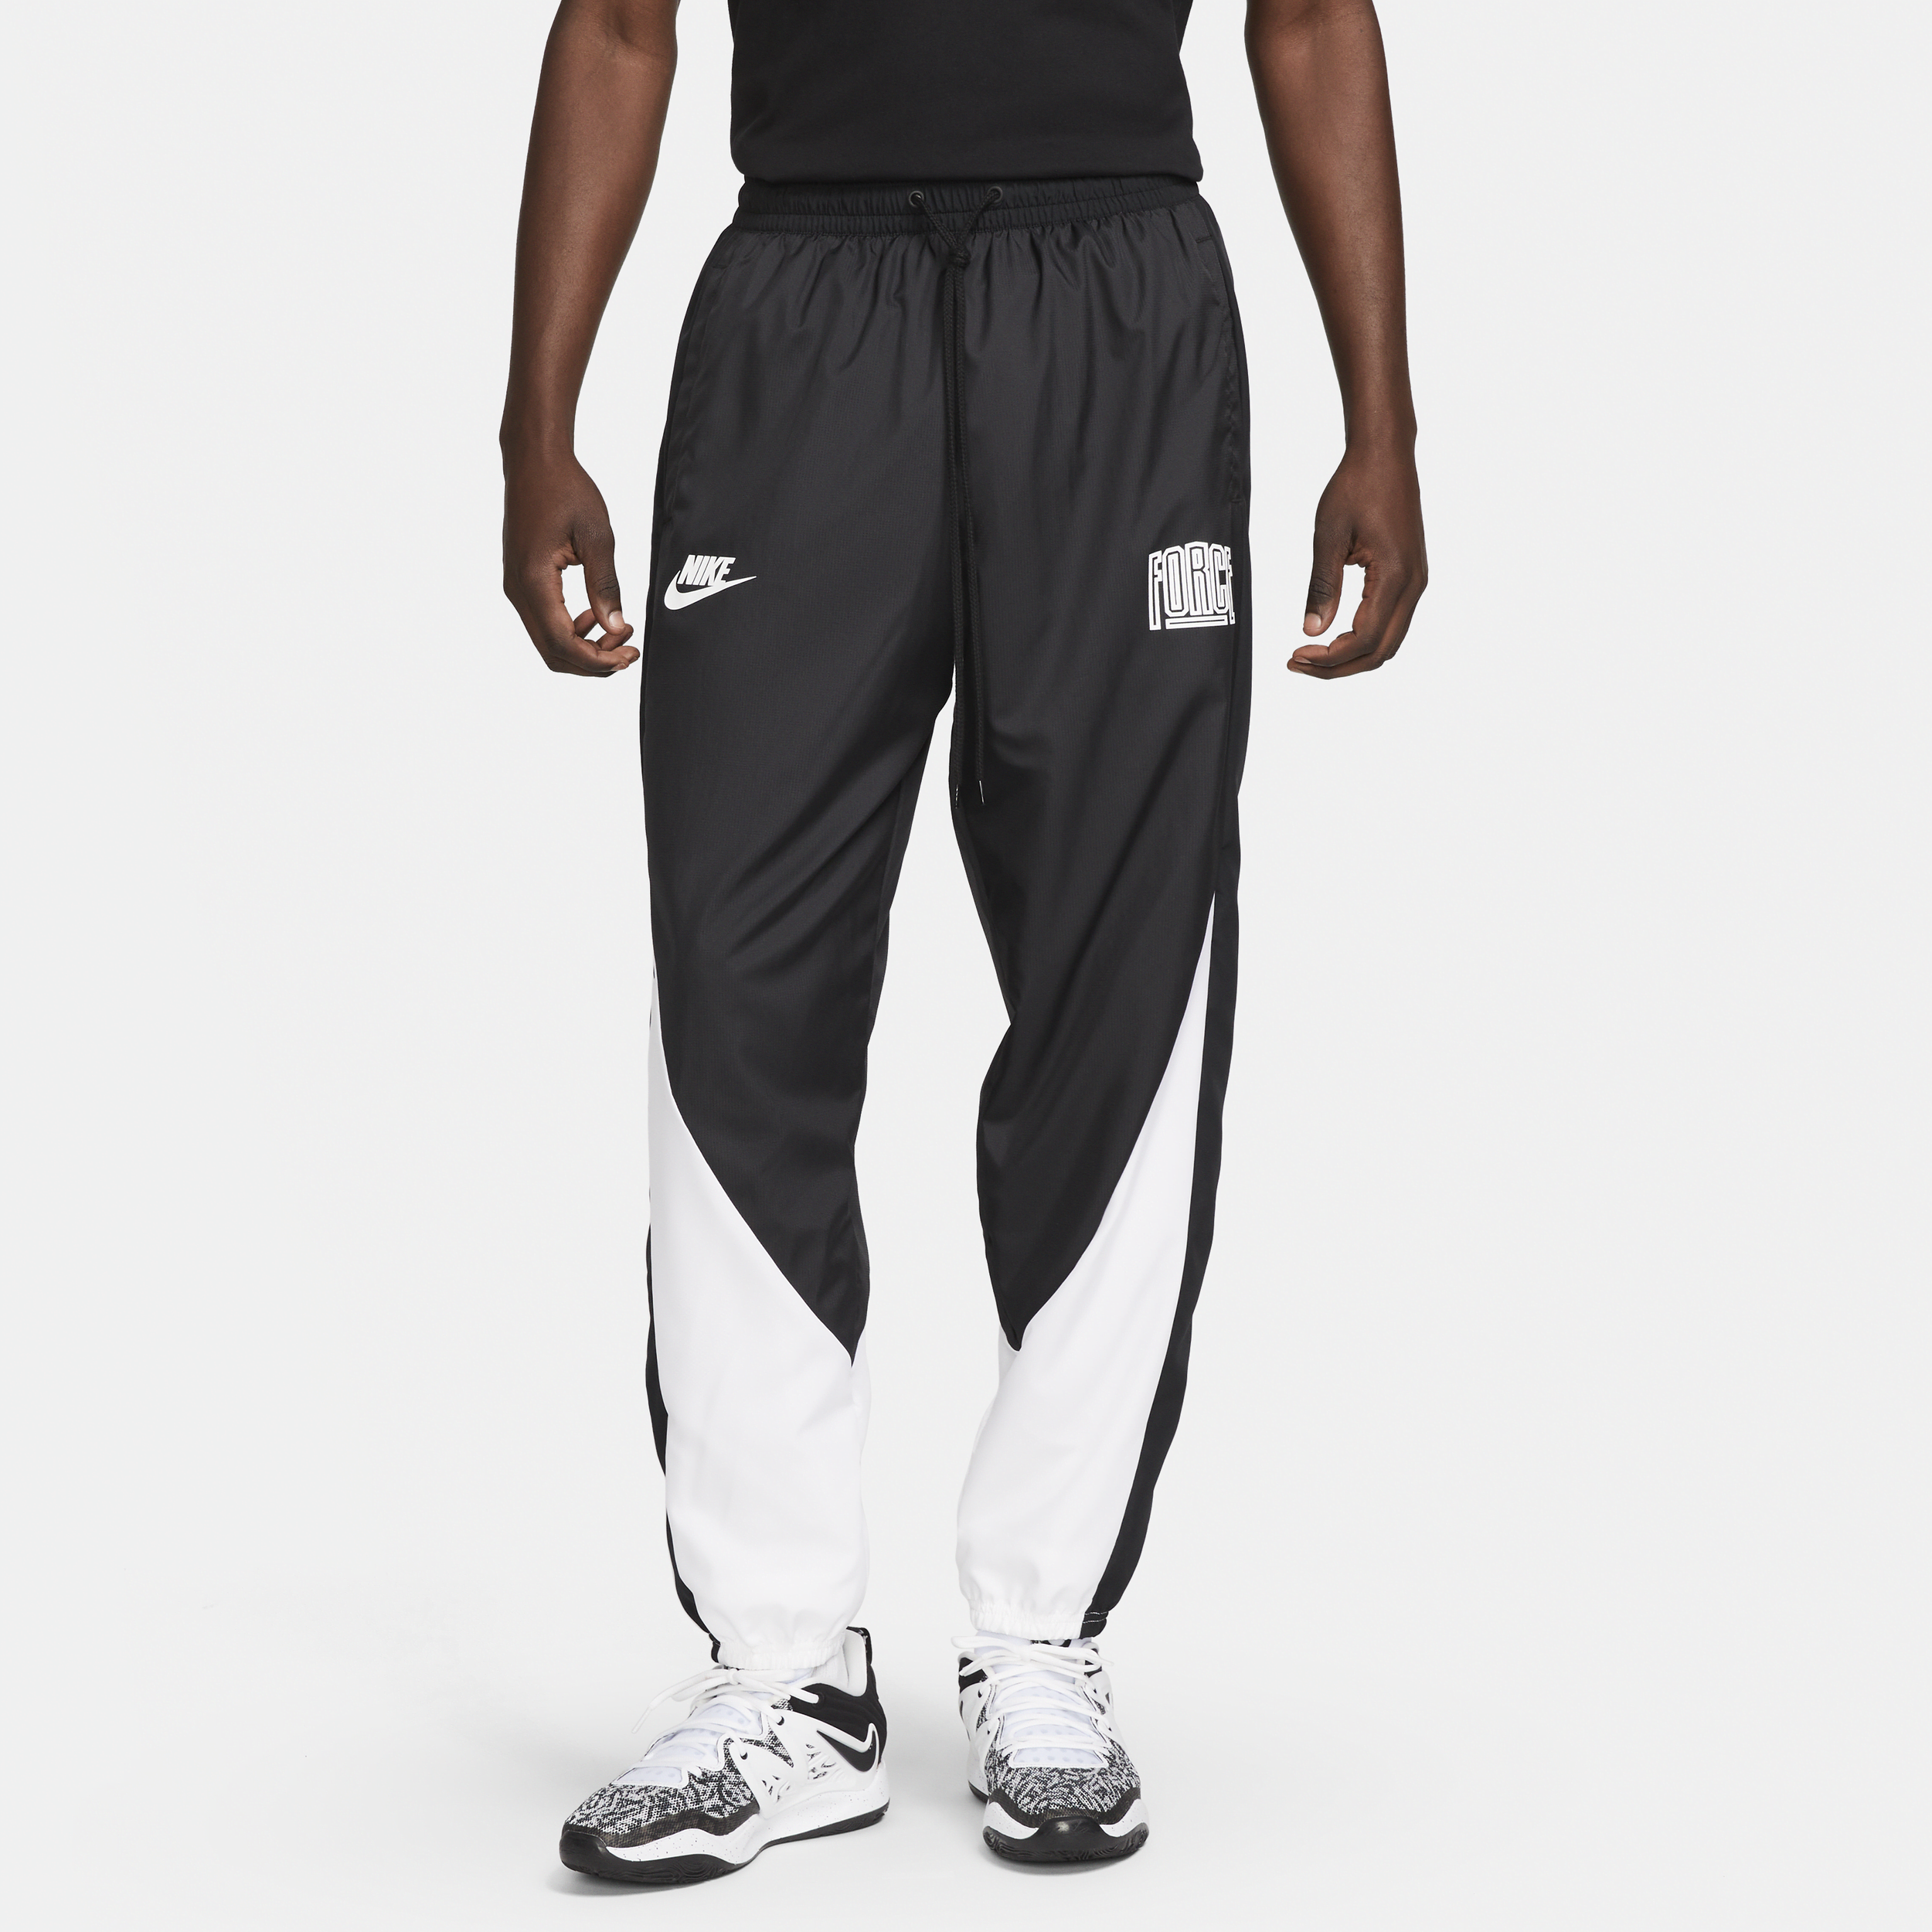 Pantaloni da basket Nike Starting 5 – Uomo - Nero